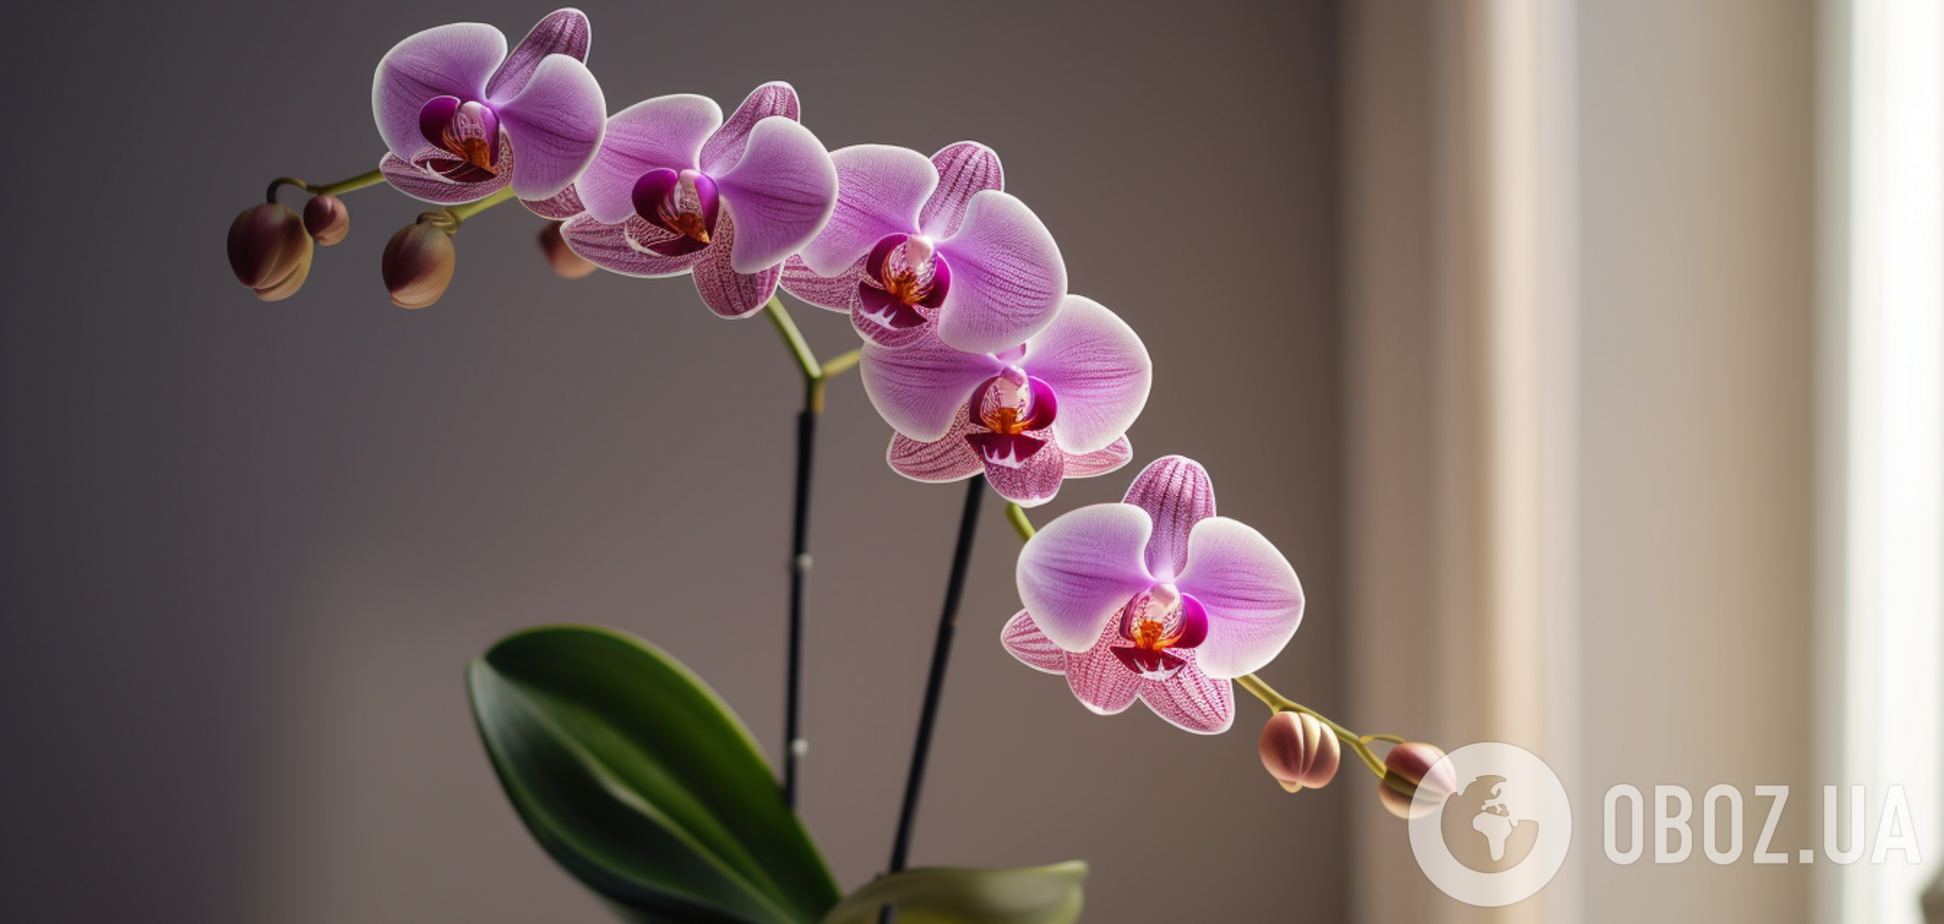 Чем подкормить орхидею, чтобы она зацвела: два нехитрых метода